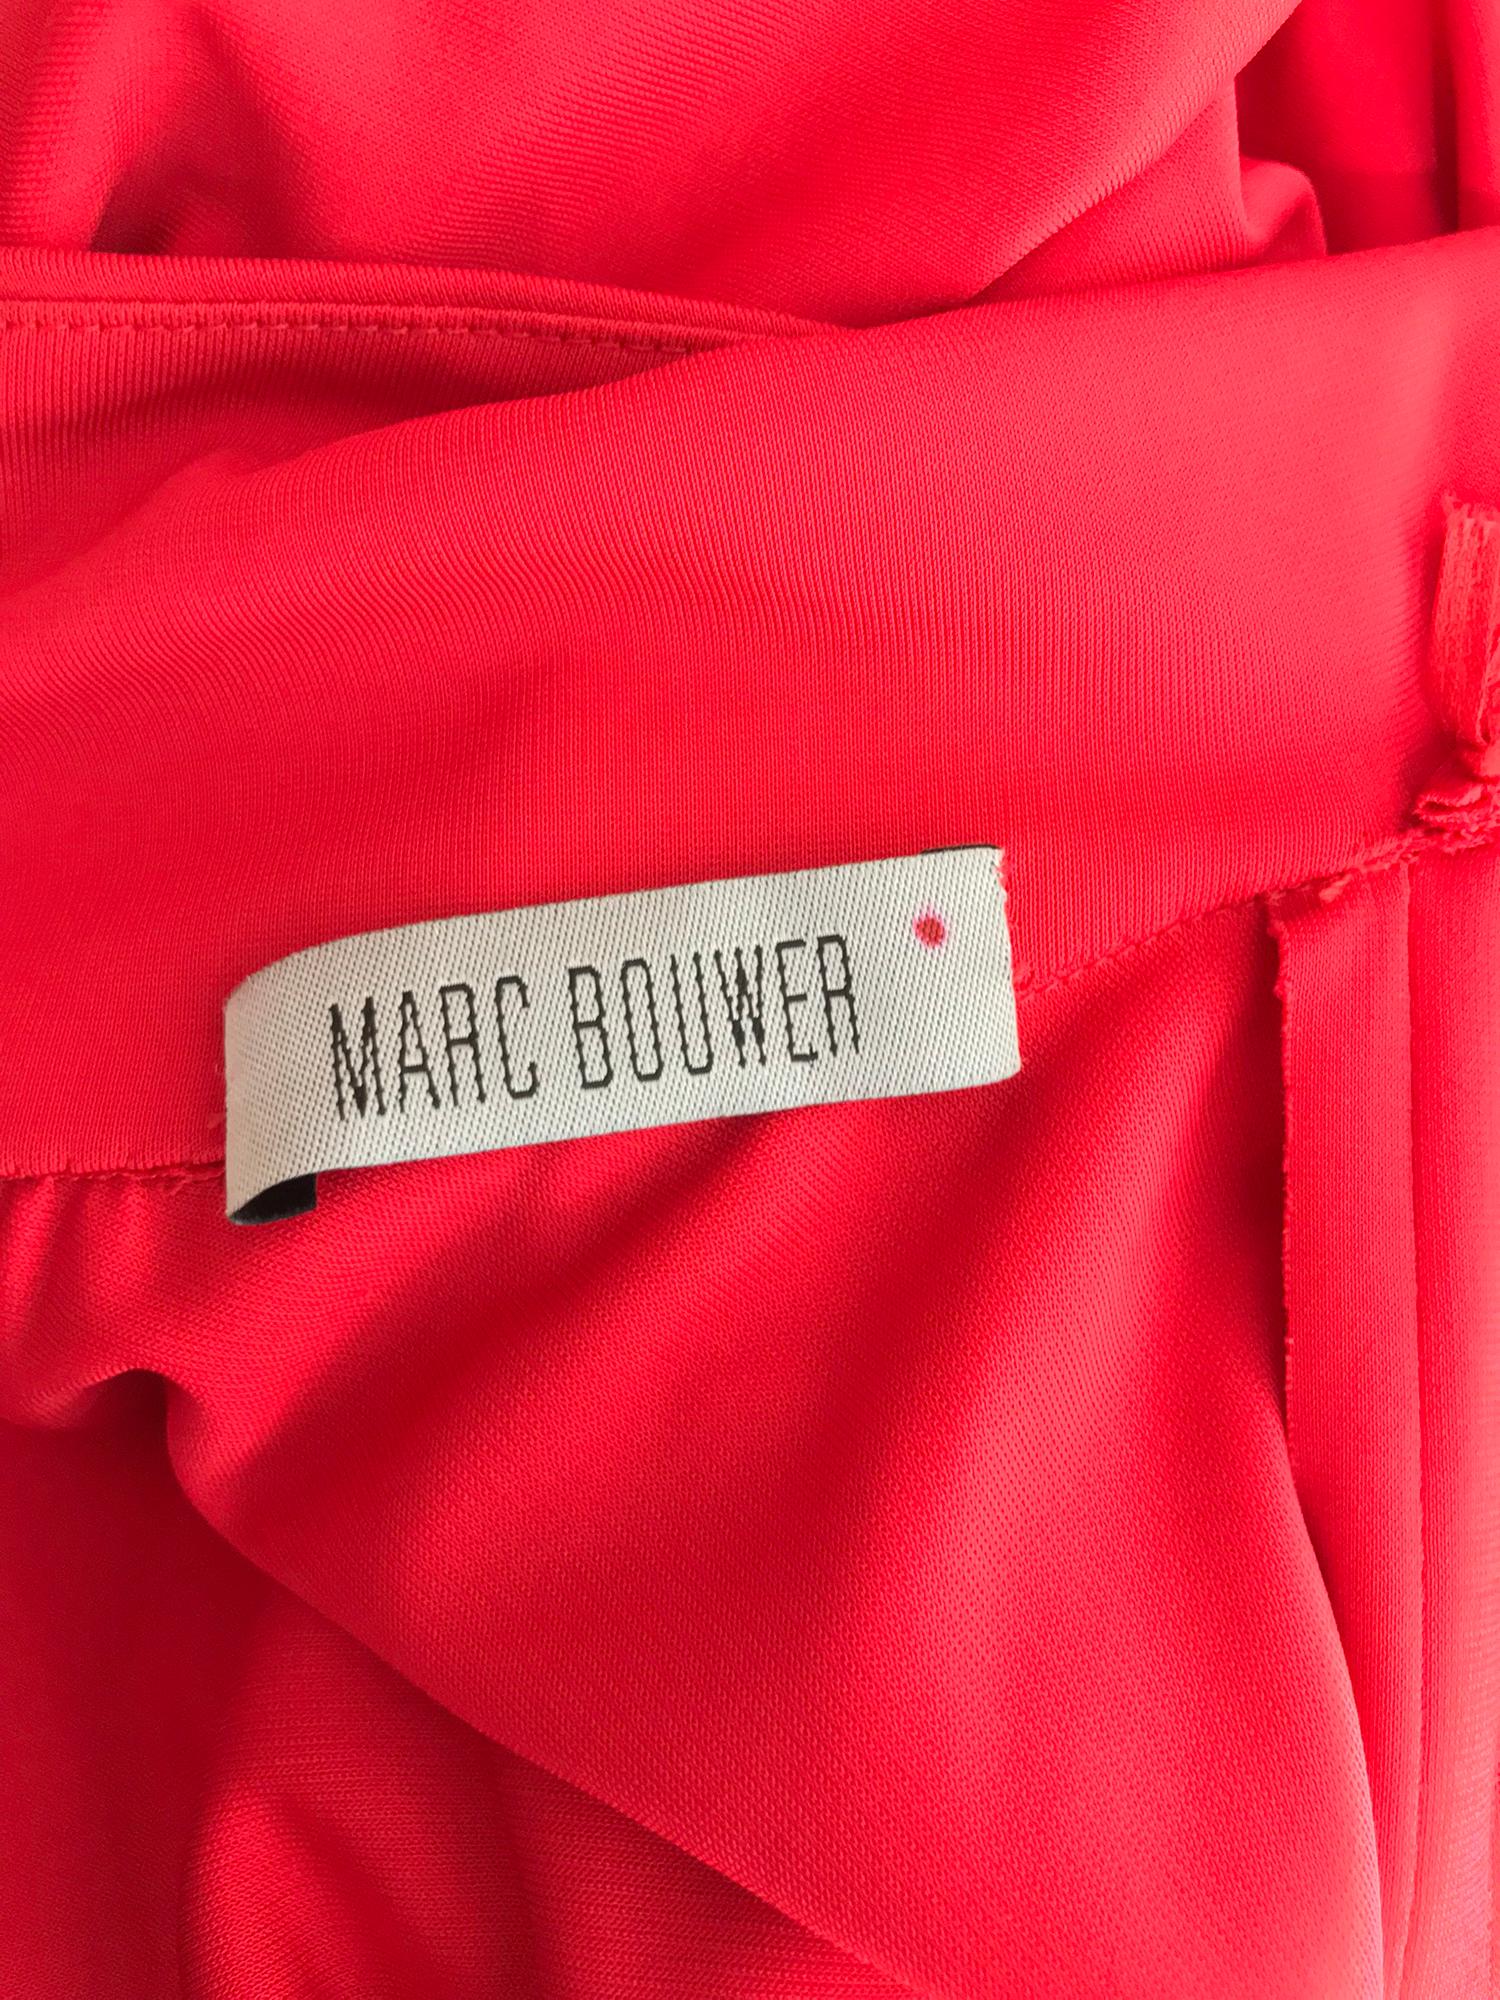 Marc Bouwer Matte Red Jersey Plunge Halter Dress Super Model Length 6